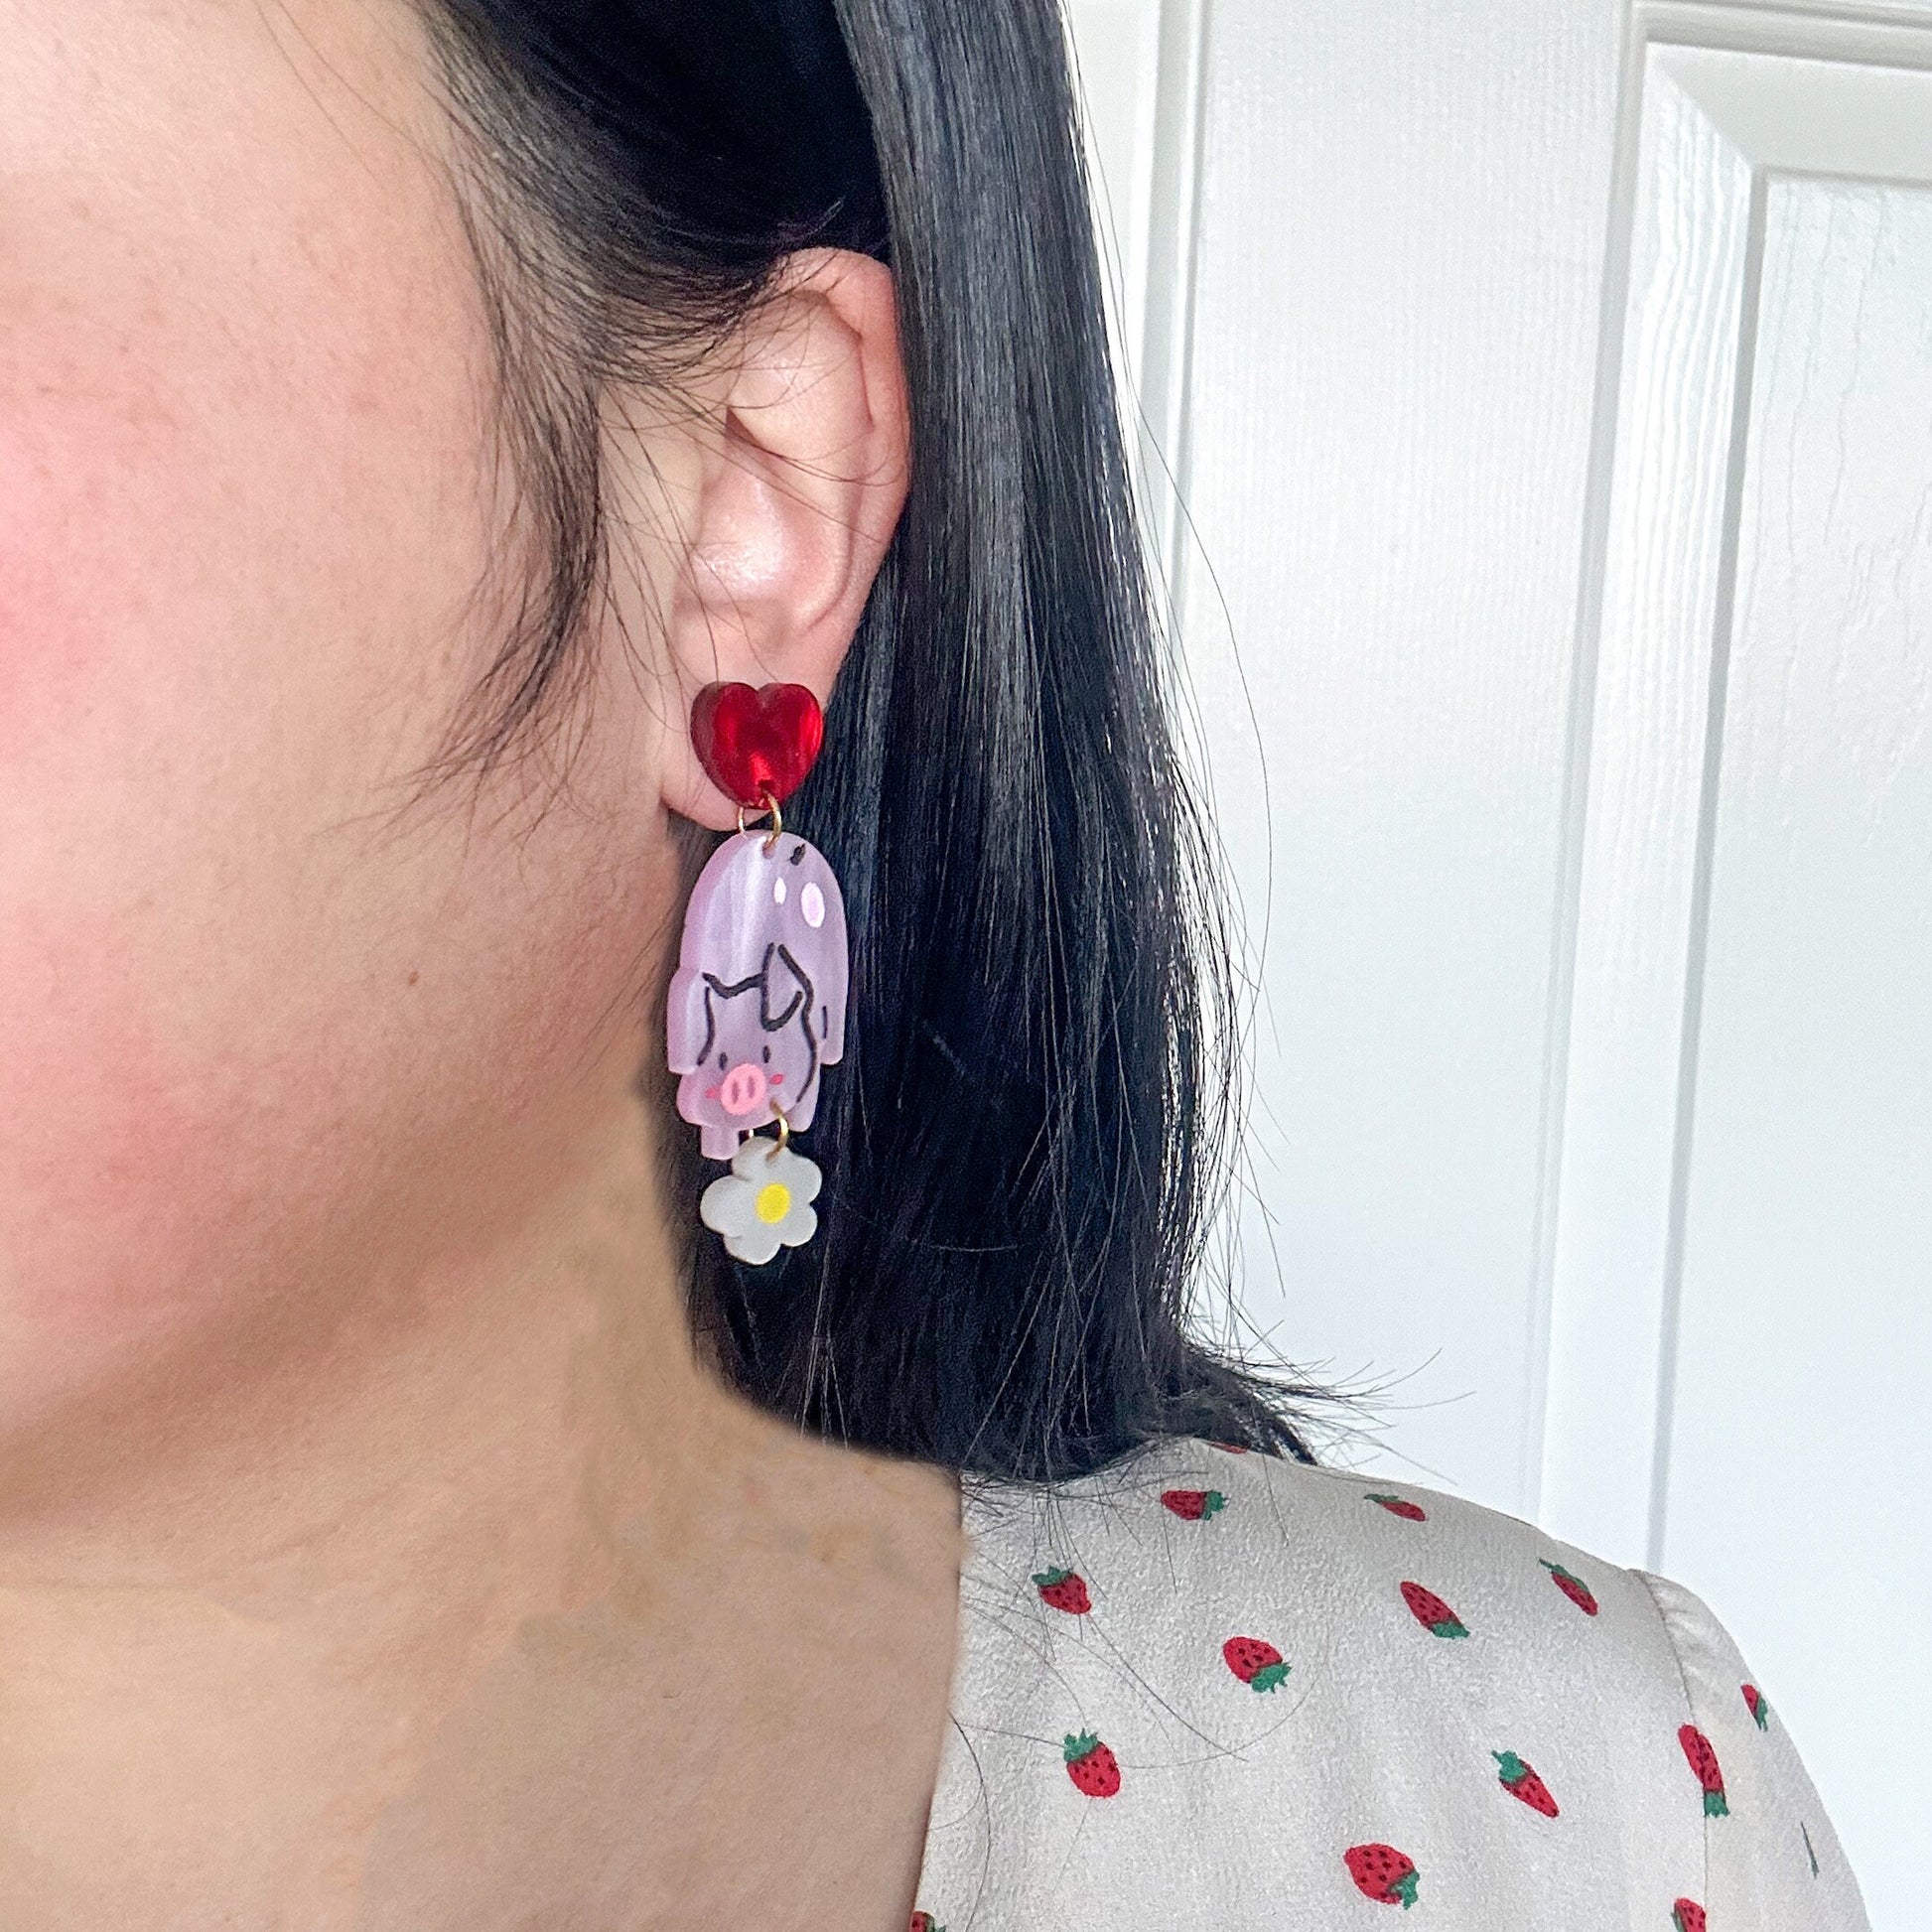 Daisy Pig Earrings//Spring Earring//Statement Earring//Acrylic Earring//Animal Earrings//Spring Vibes//Gift for Her